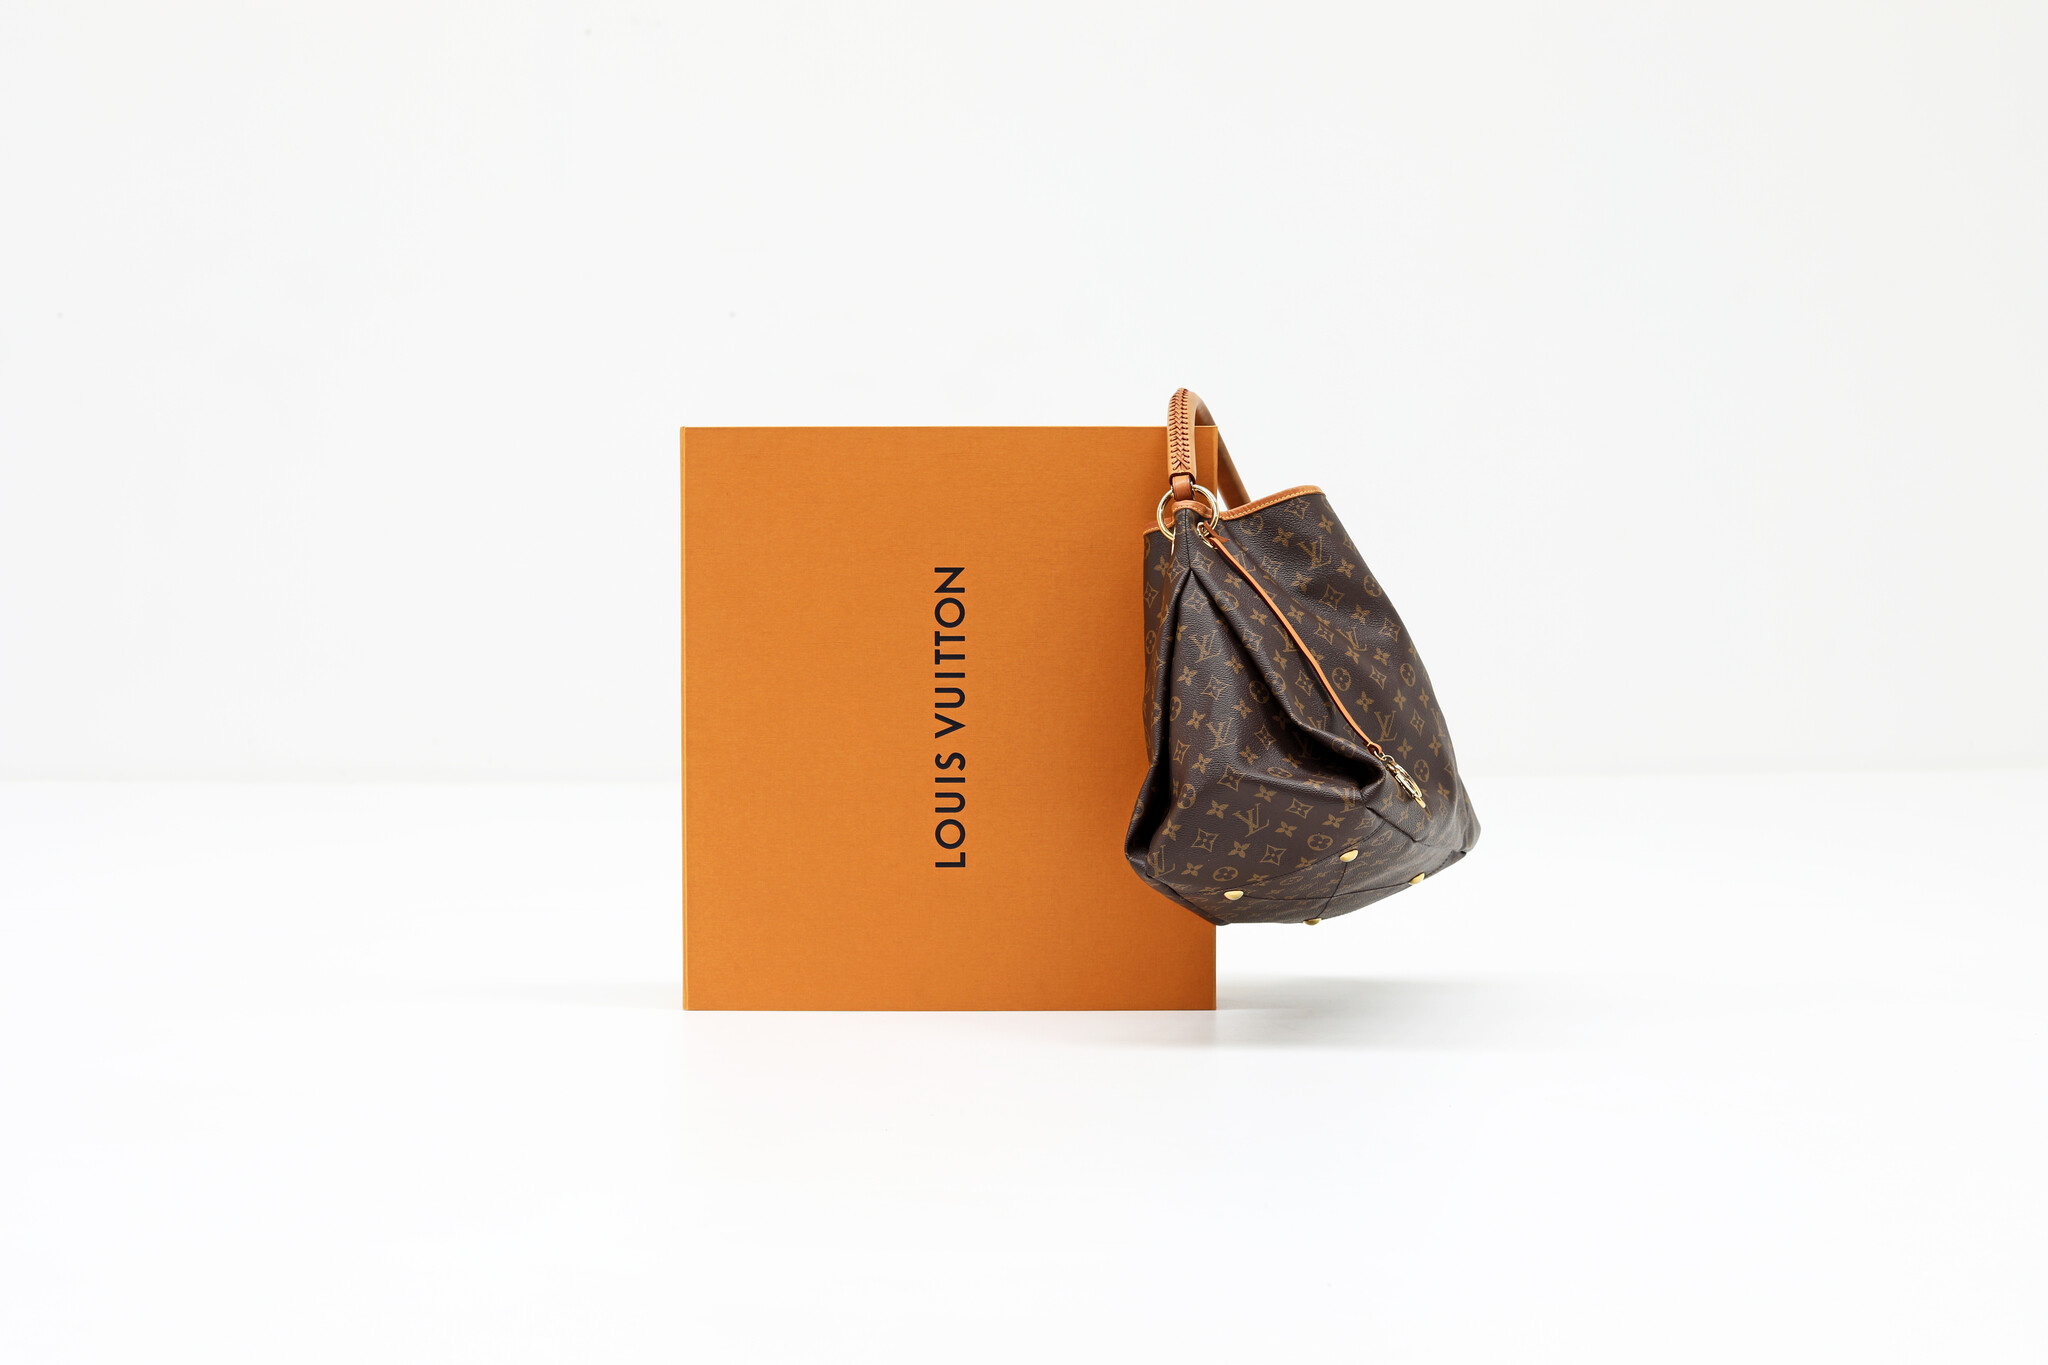 Louis Vuitton Artsy handbag